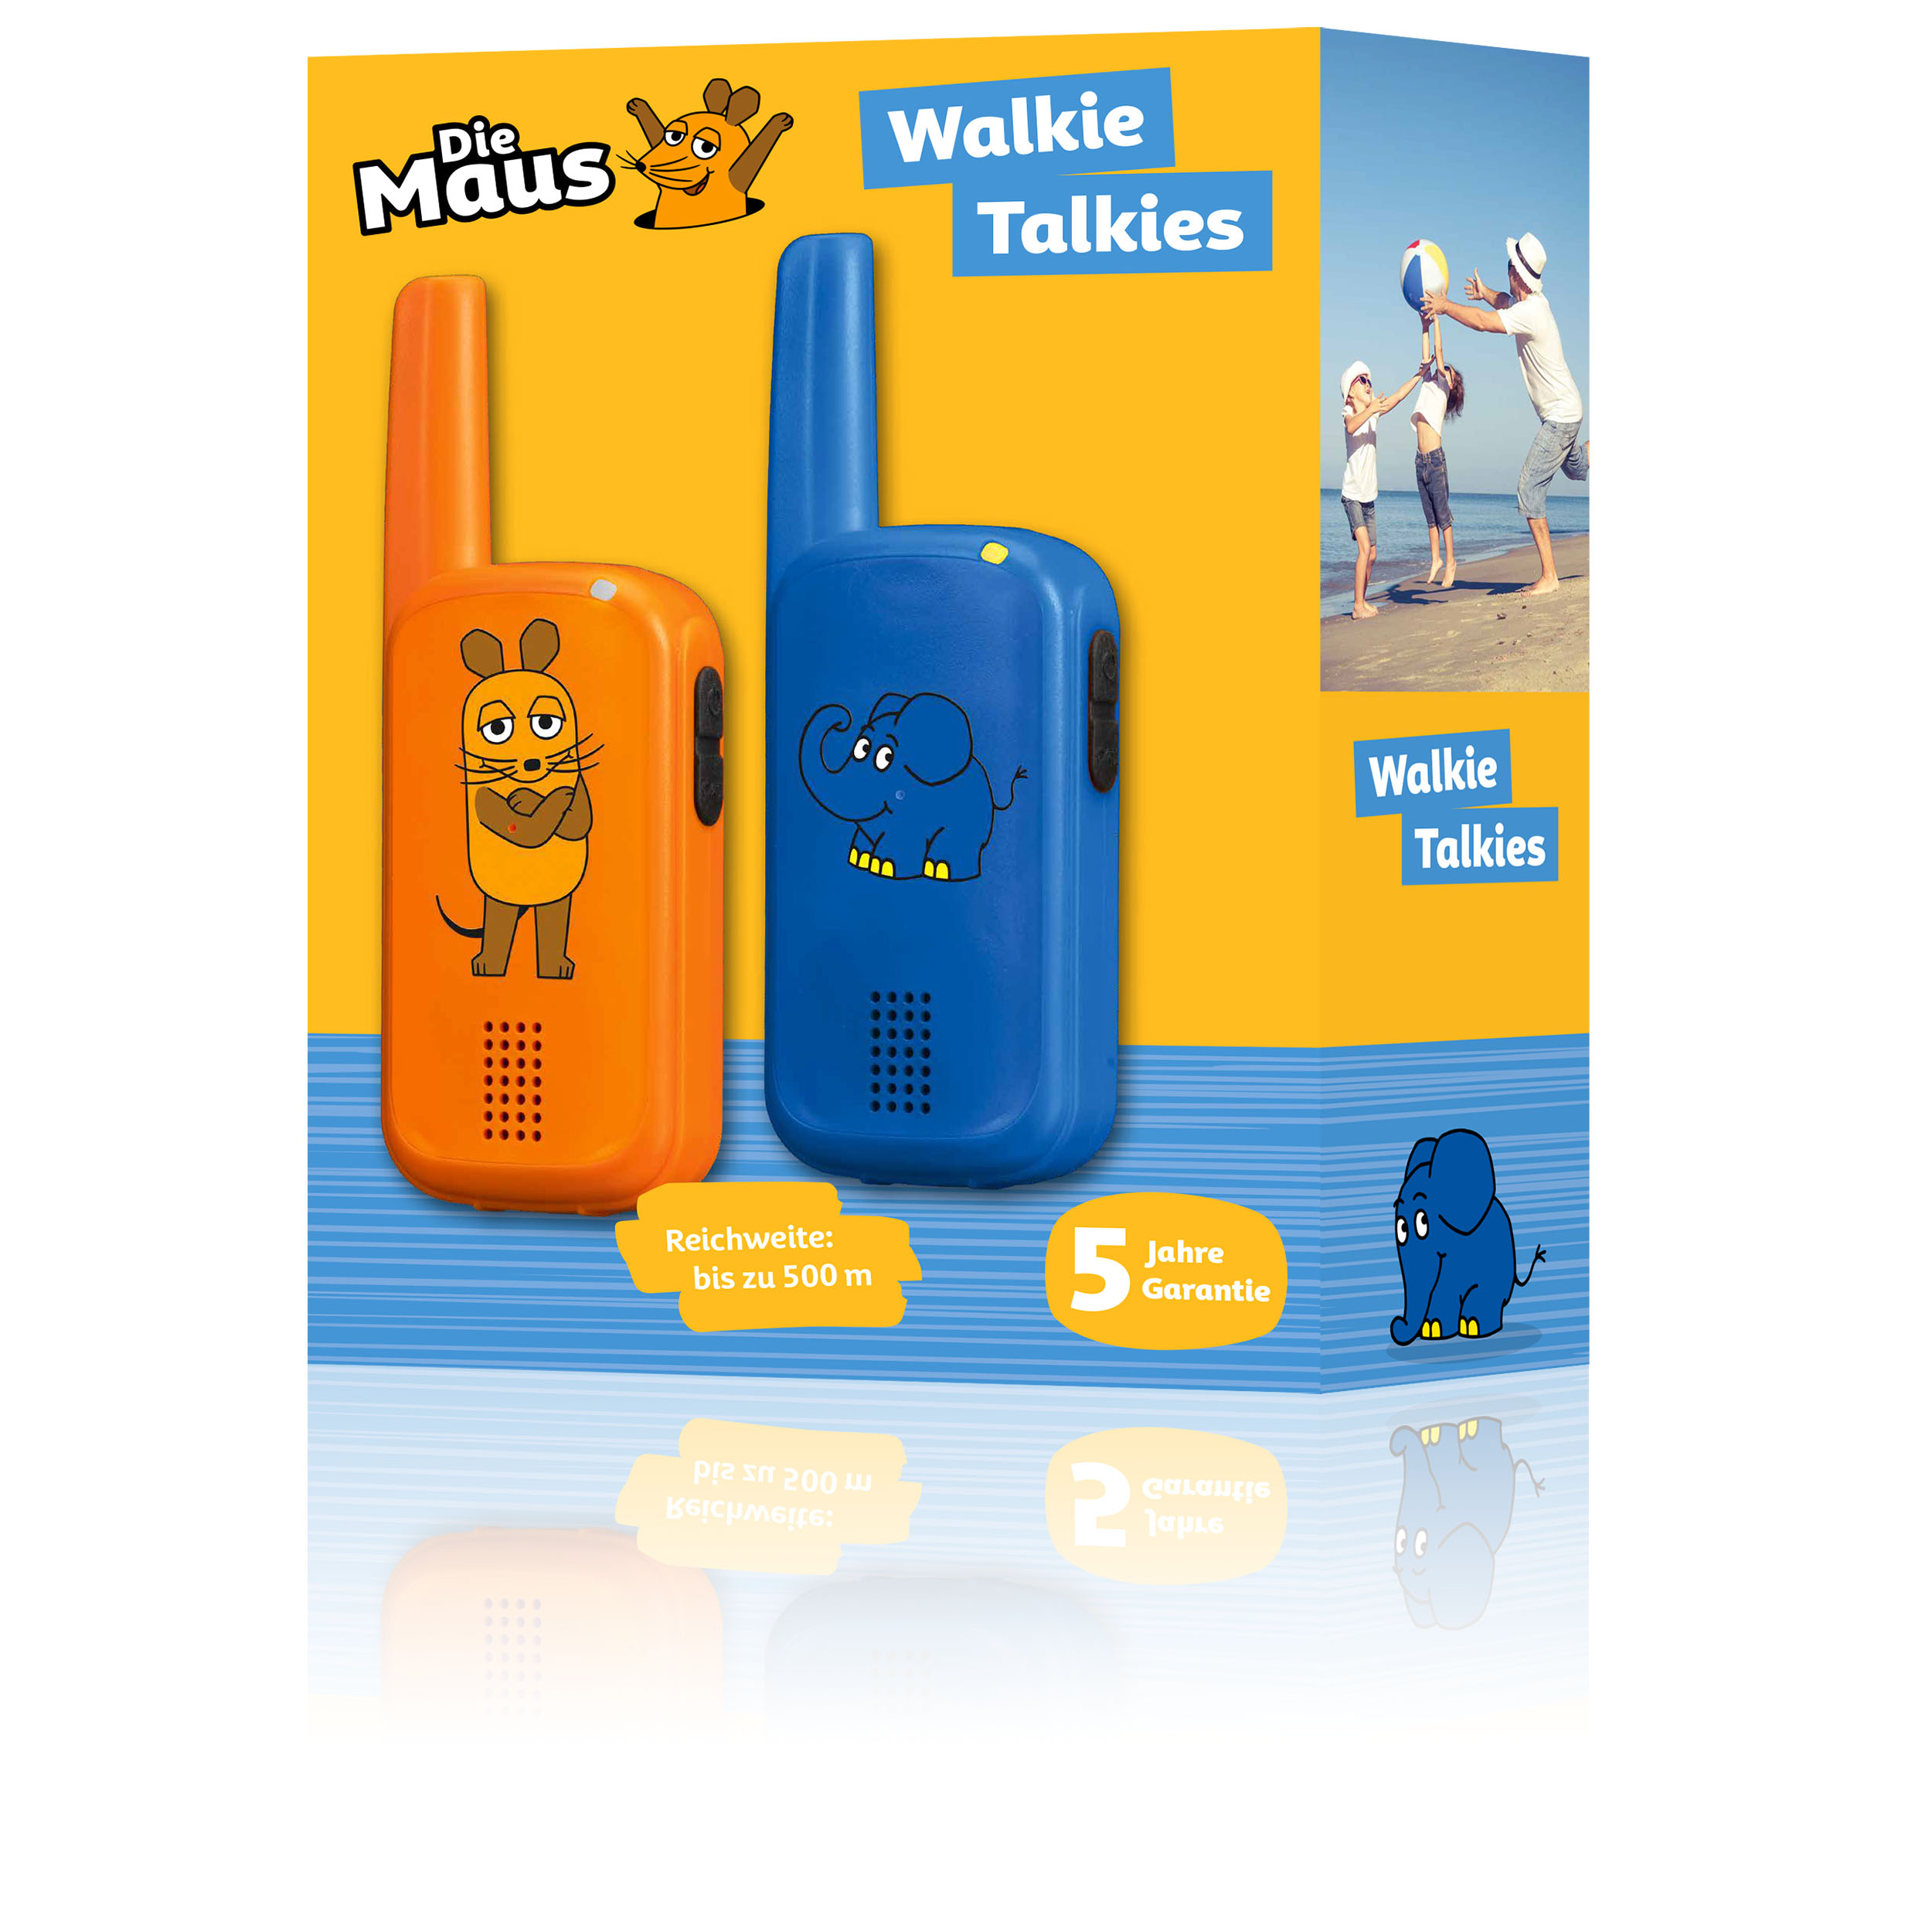 Die Maus Walkie-Talkies for Kids